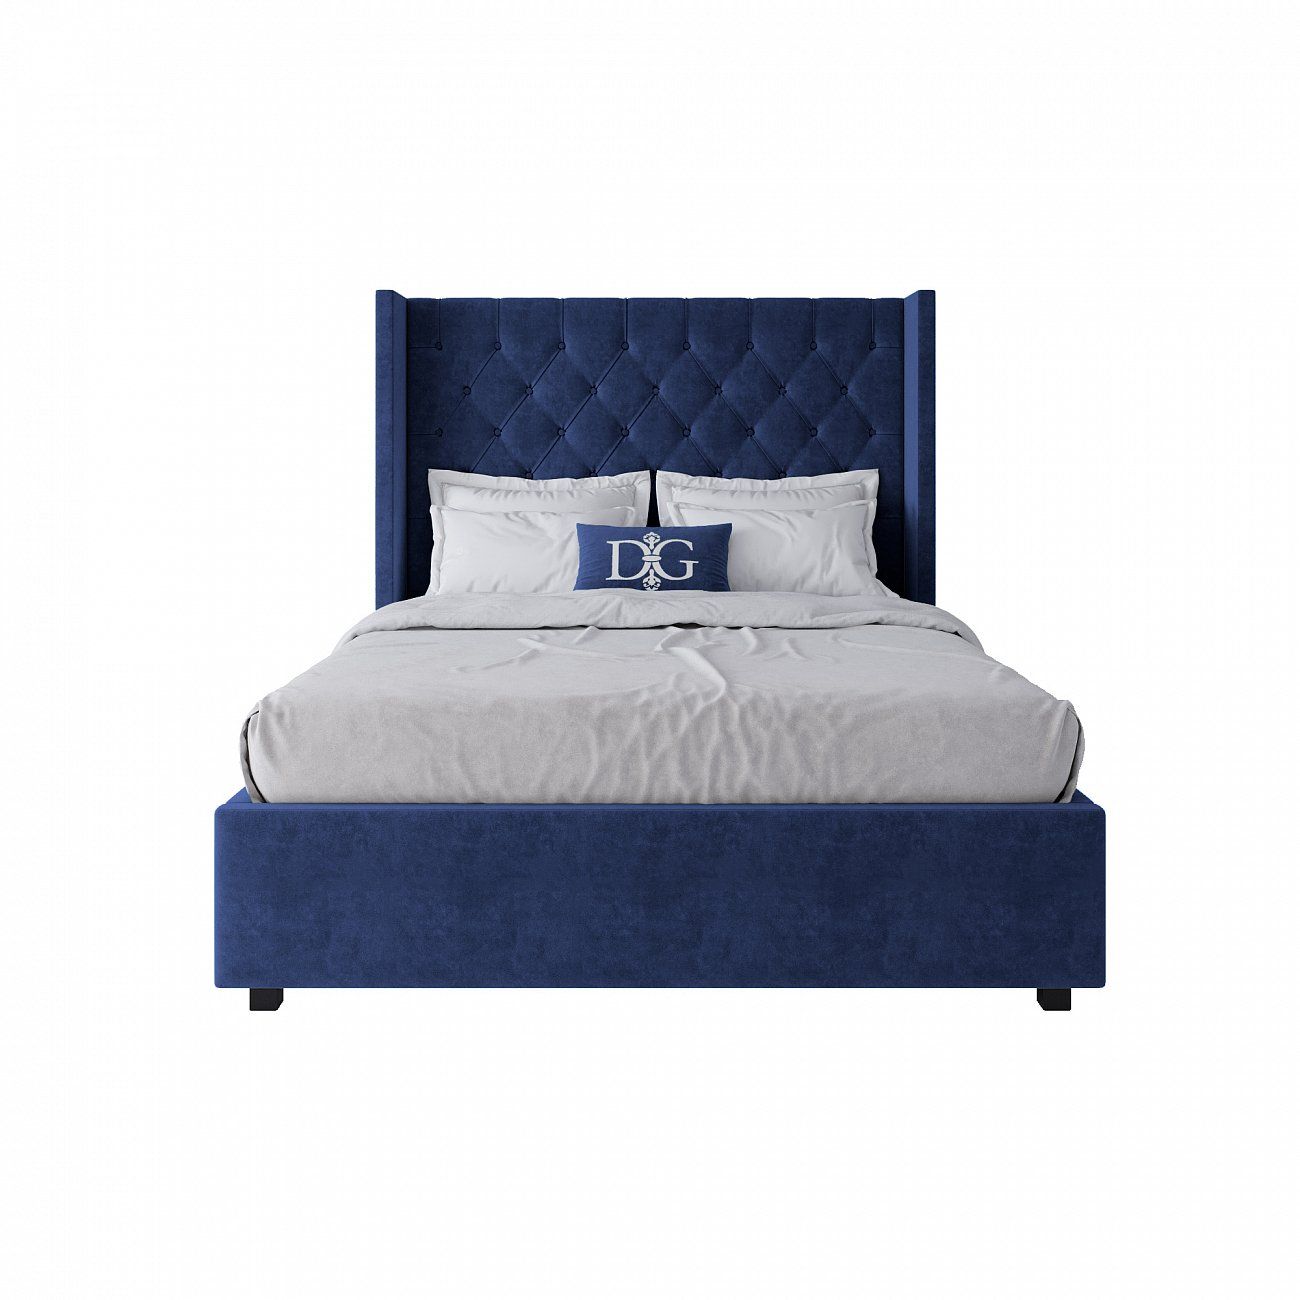 Кровать подростковая 140х200 см синяя с каретной стяжкой без гвоздиков Wing-2